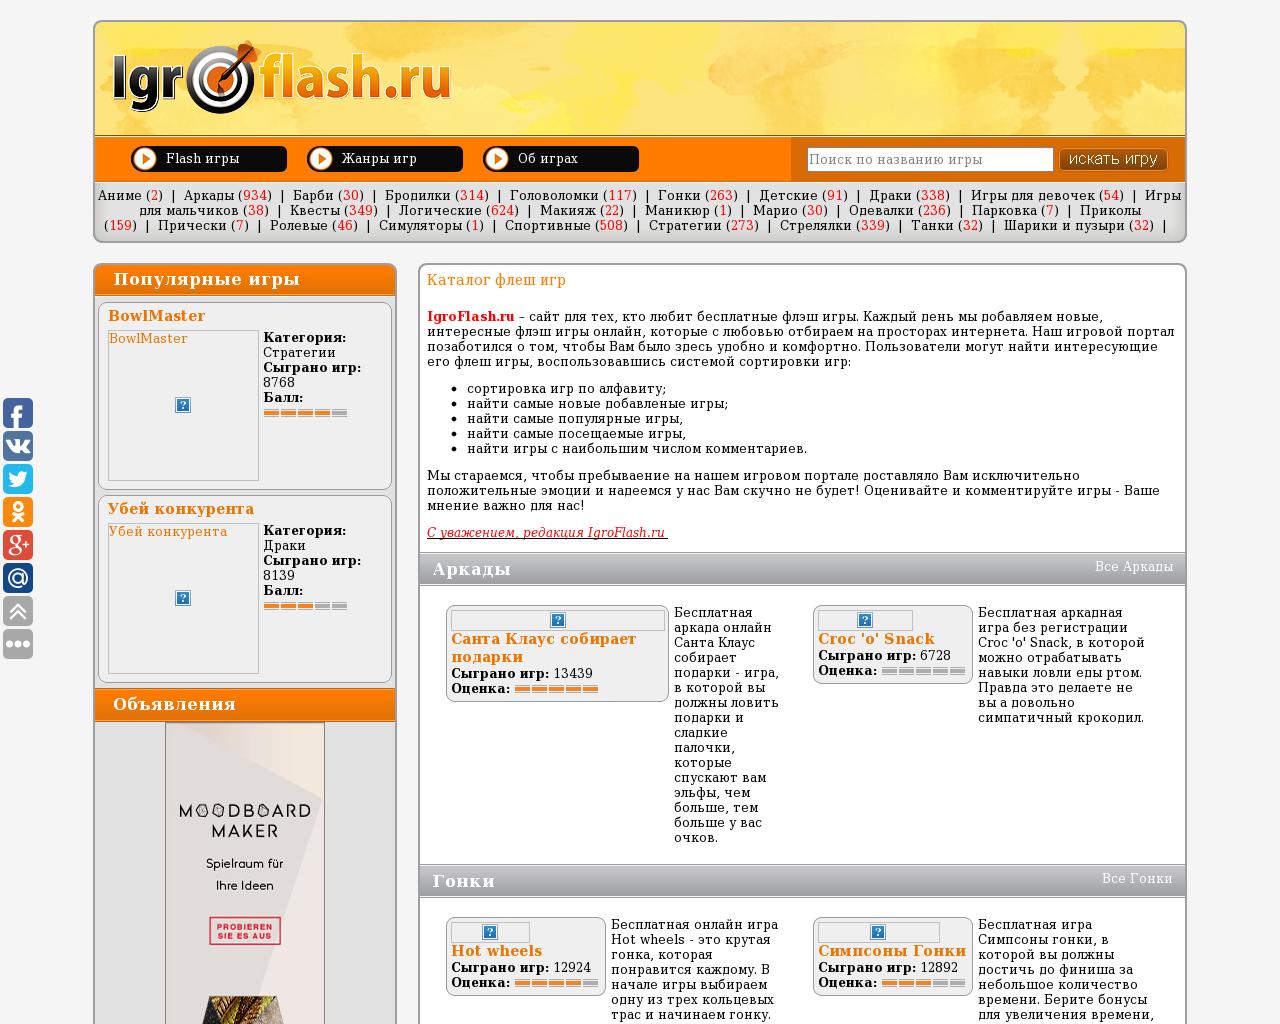 Изображение сайта igroflash.ru в разрешении 1280x1024